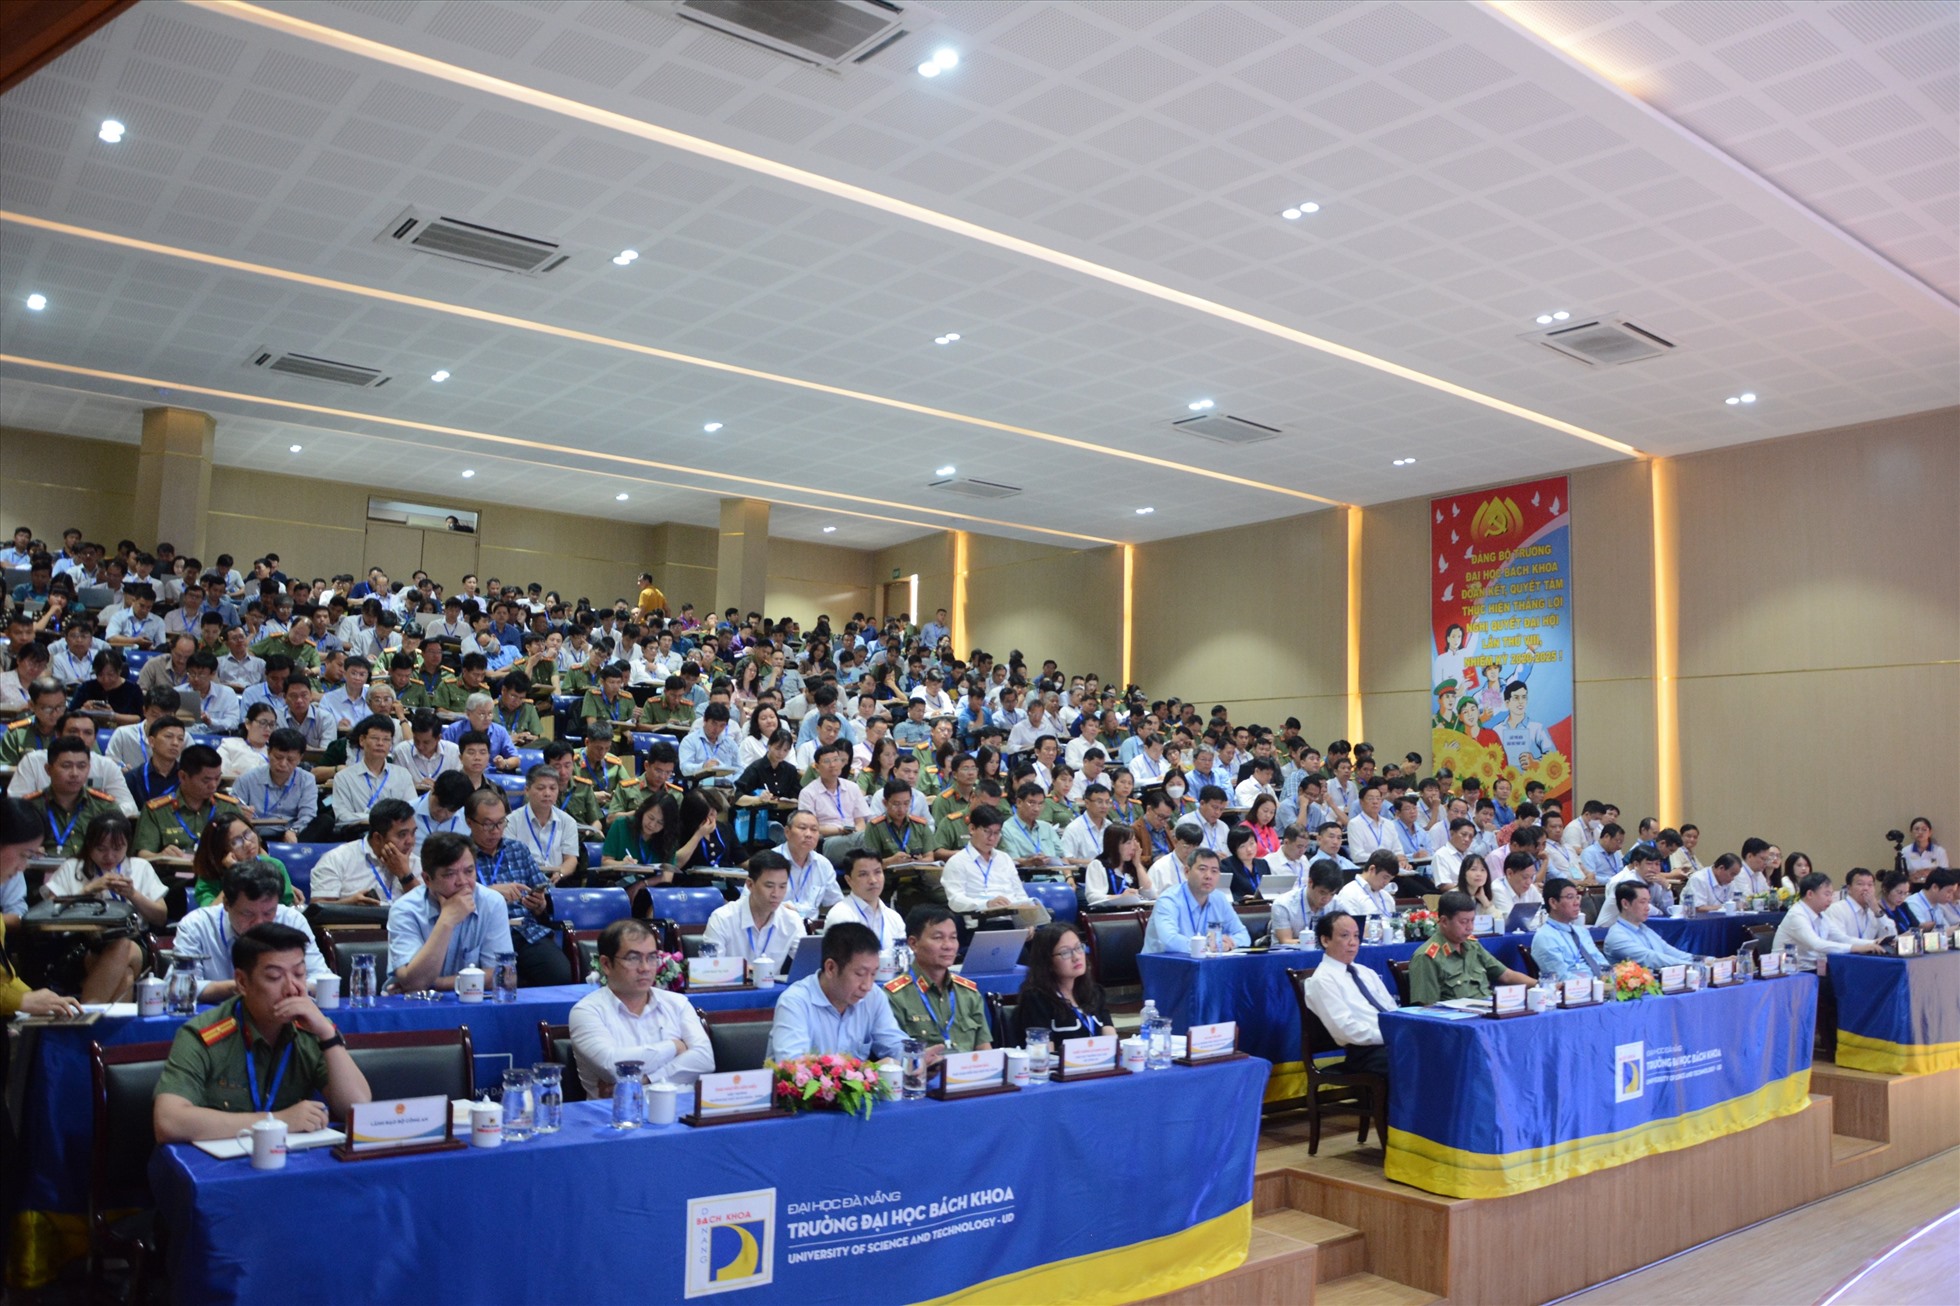 Hội nghị tập huấn về công tác tổ chức Kỳ thi tốt nghiệp Trung học Phổ thông năm 2023 đã diễn ra tại Đà Nẵng. Ảnh: Mai Hương